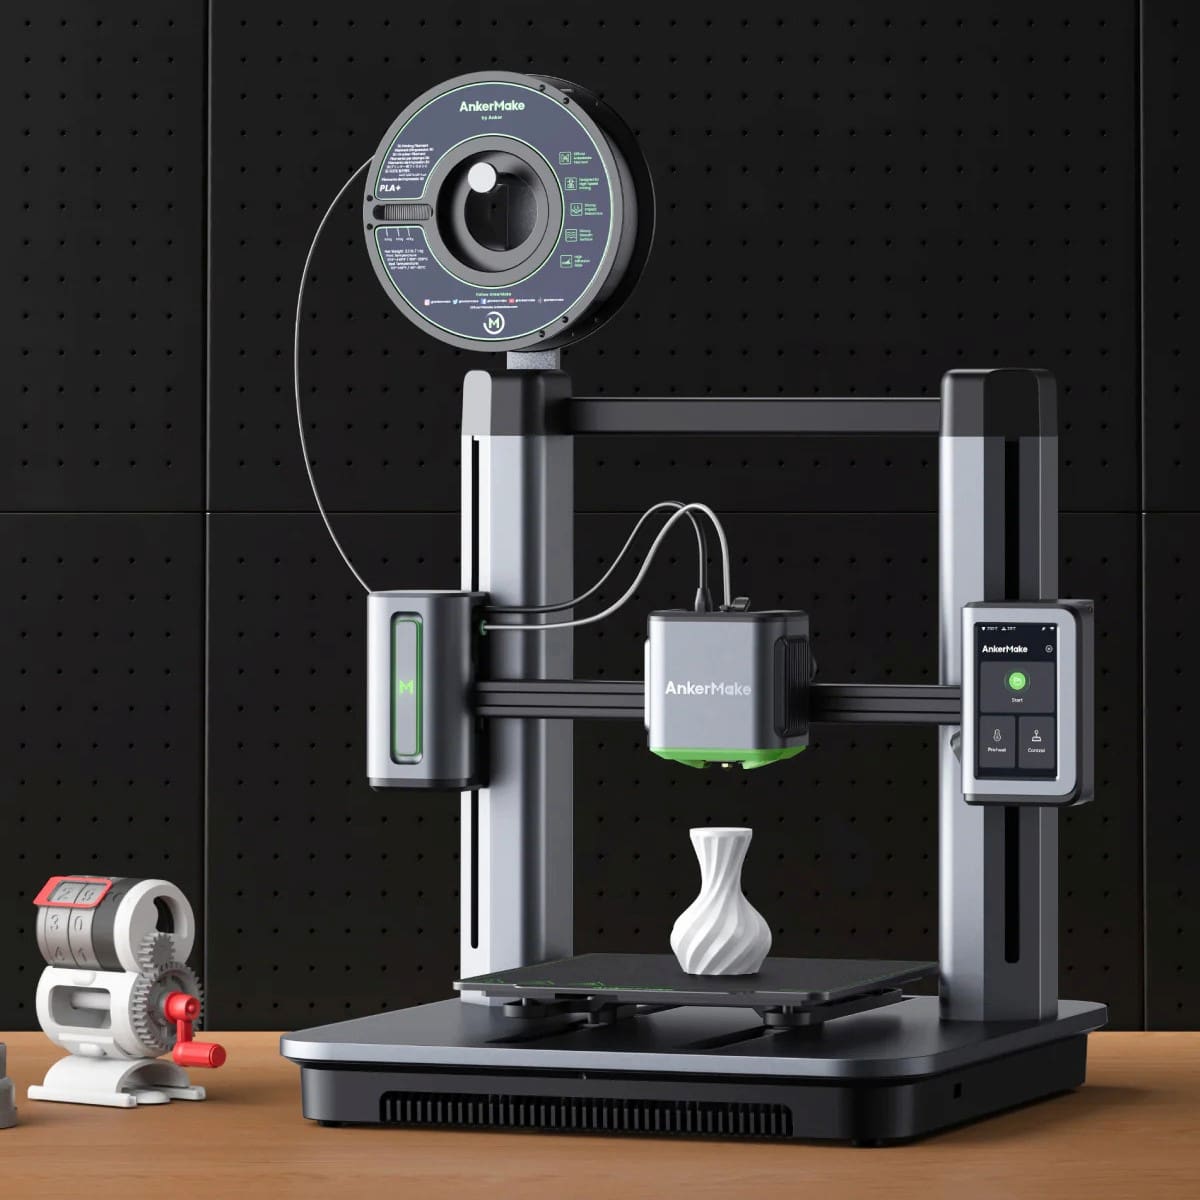 3D Printer Nozzle Size